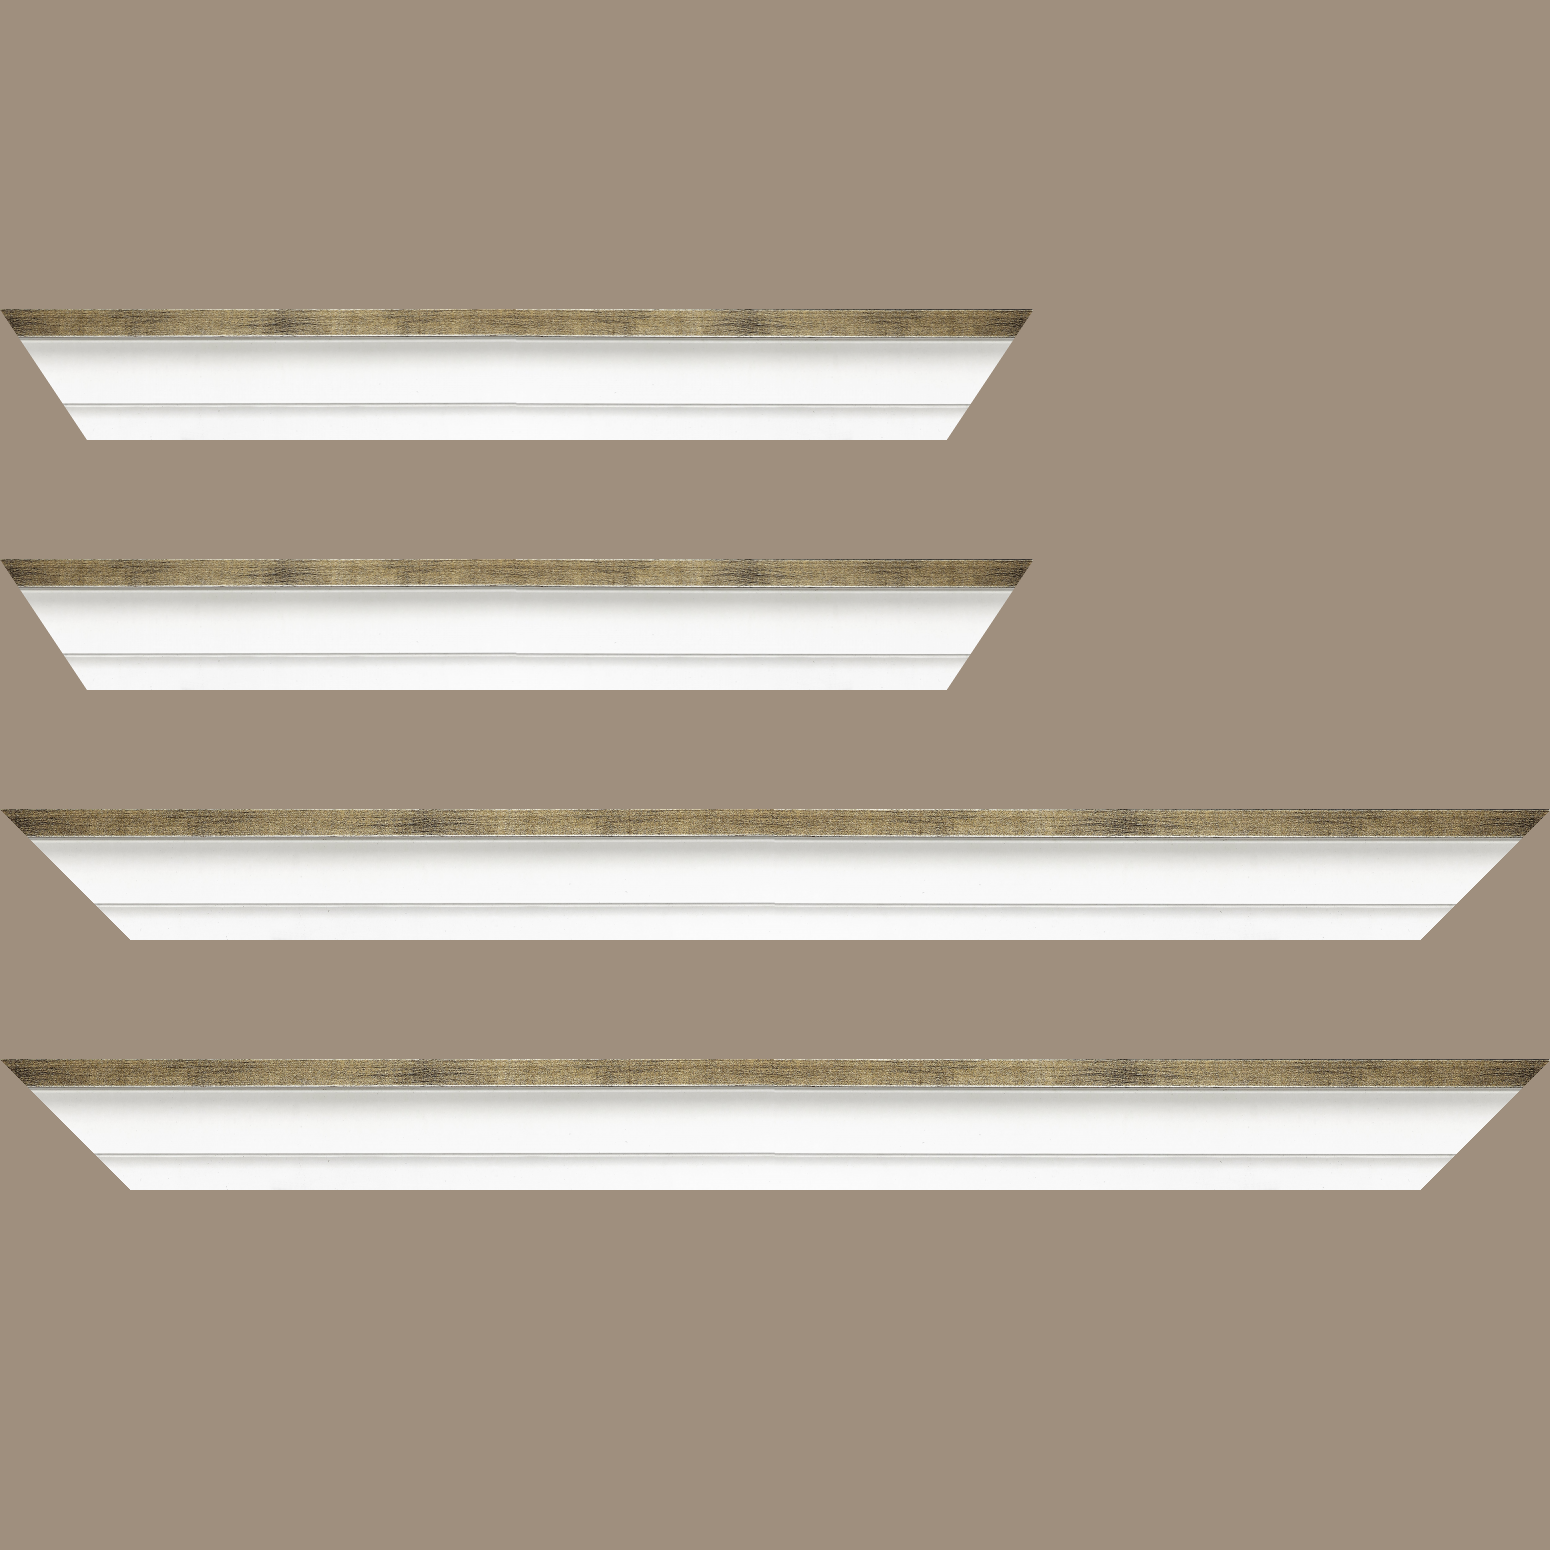 Baguette bois caisse américaine profil escalier largeur 4.4cm blanc mat filet or (spécialement conçu pour les châssis d'une épaisseur jusqu’à 2.5cm ) - 59.4x84.1